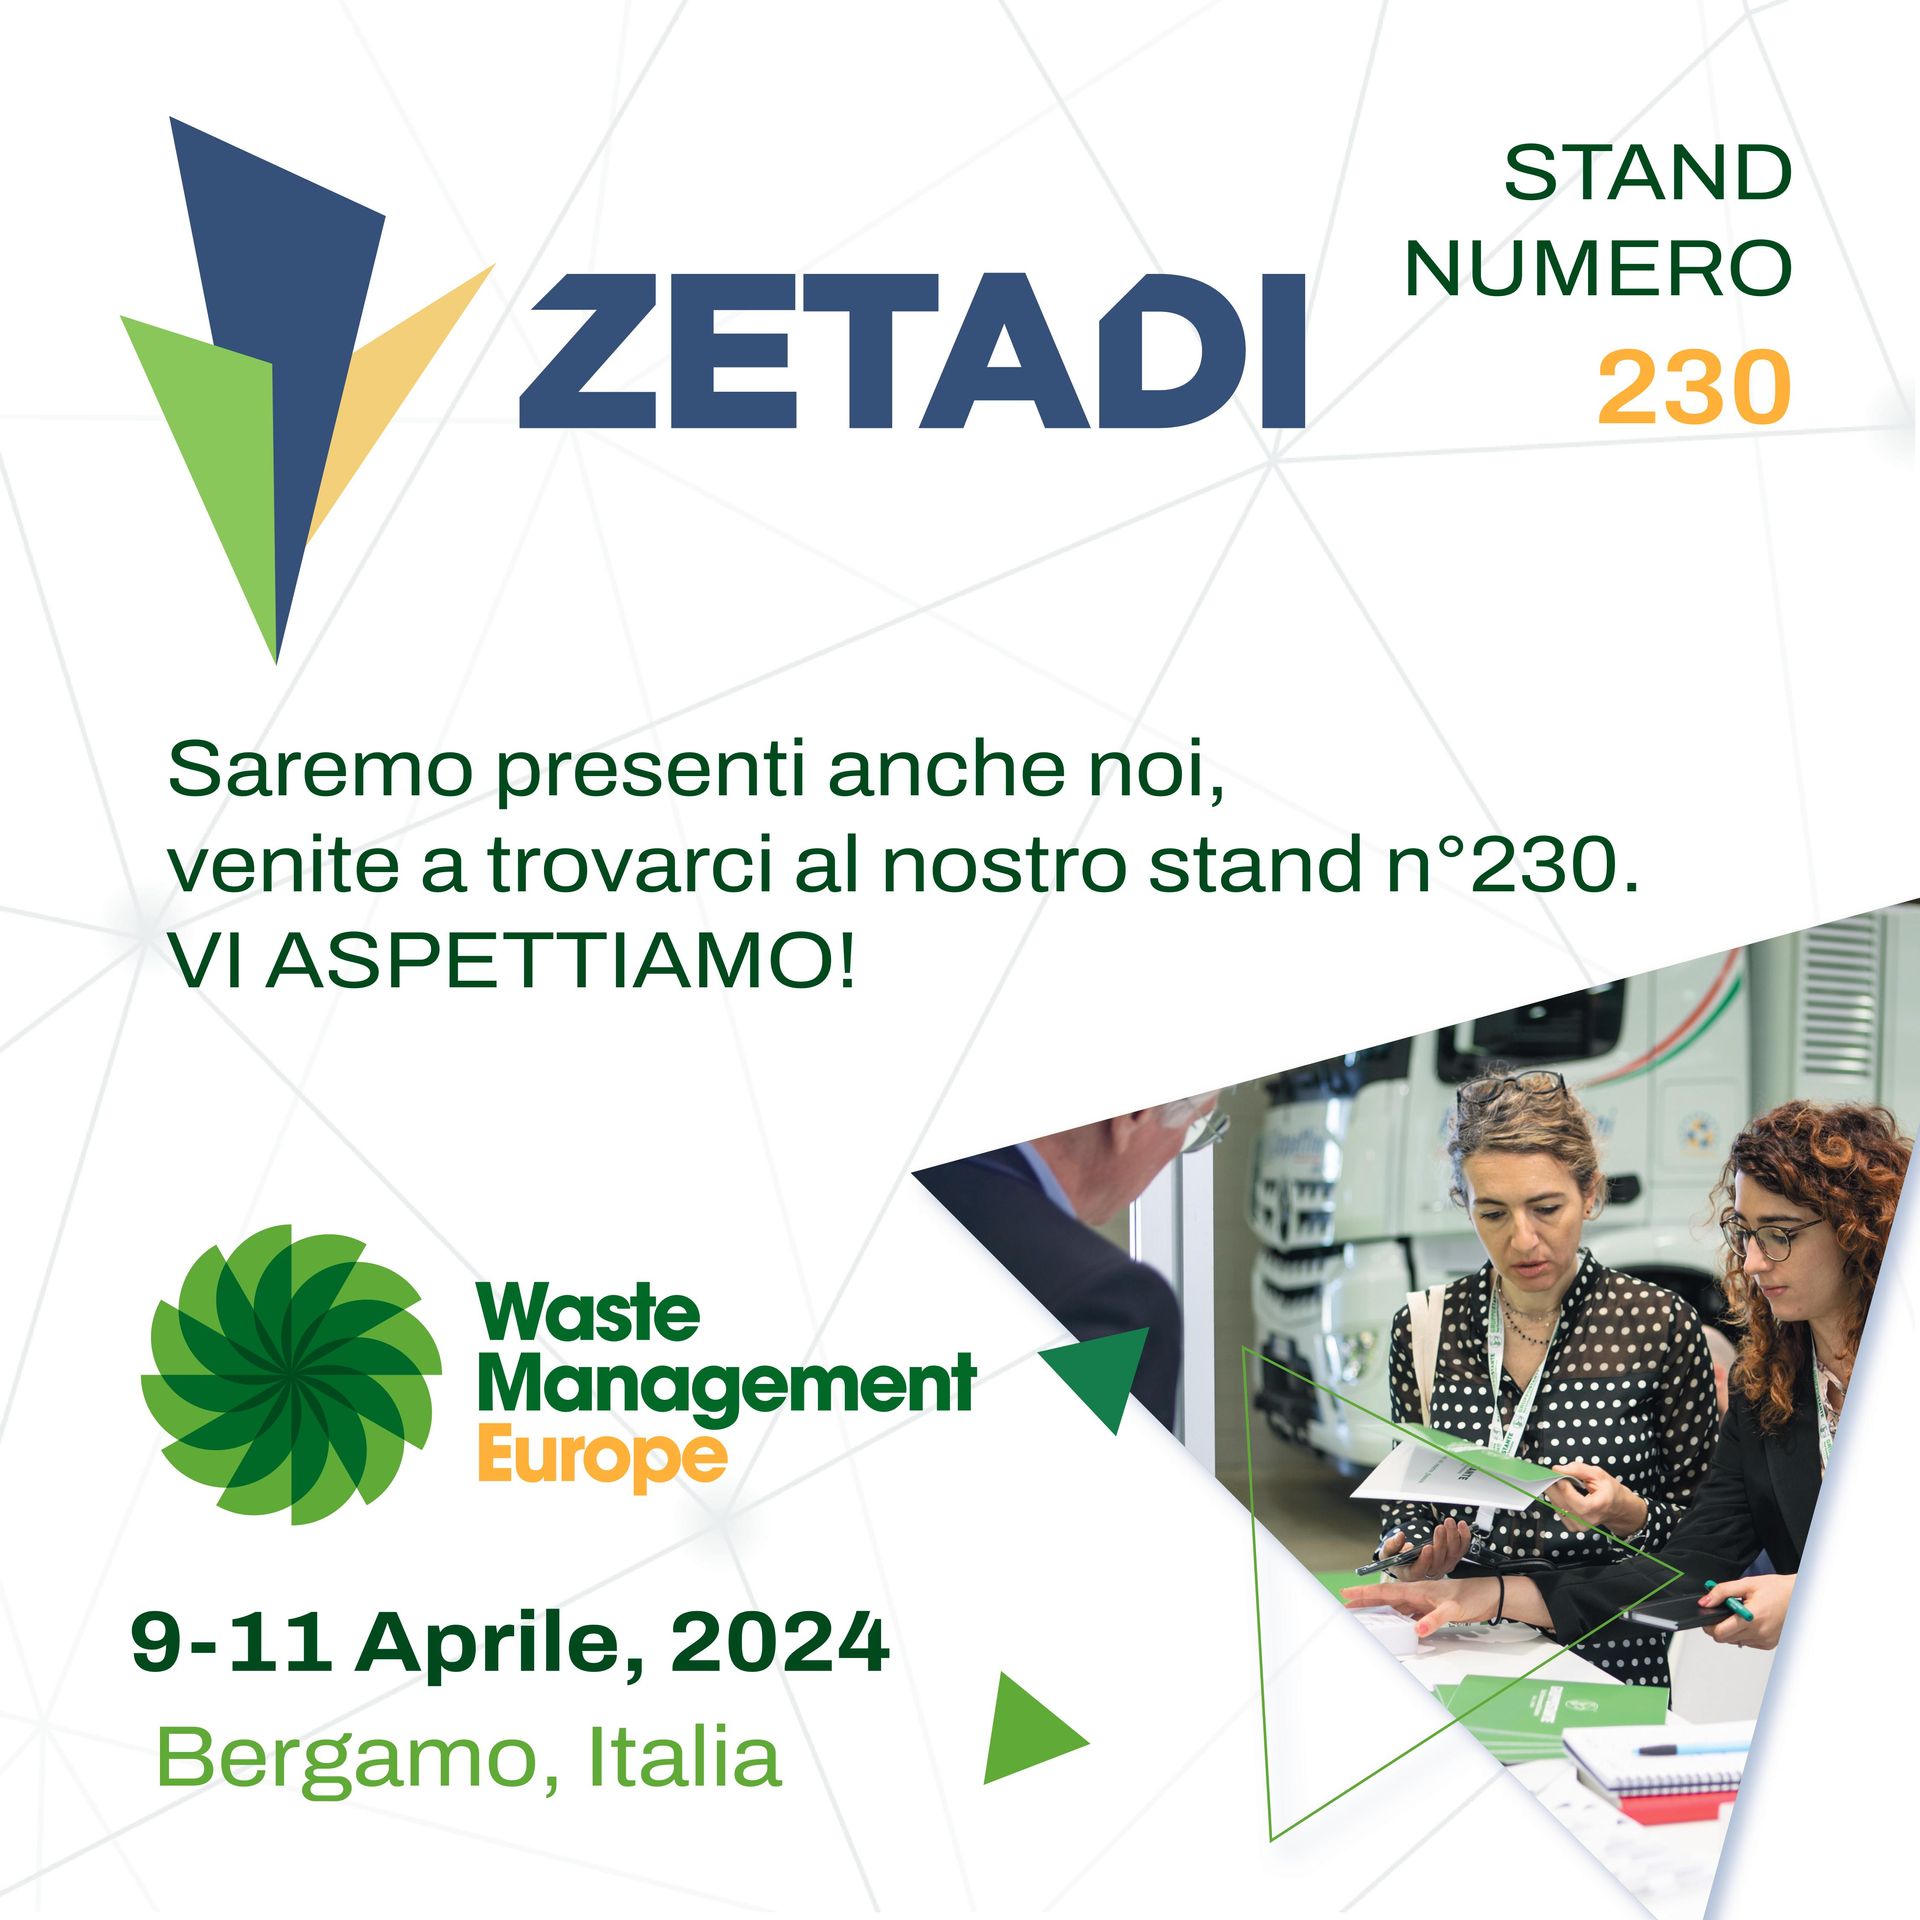 waste management europe evento zetadi 